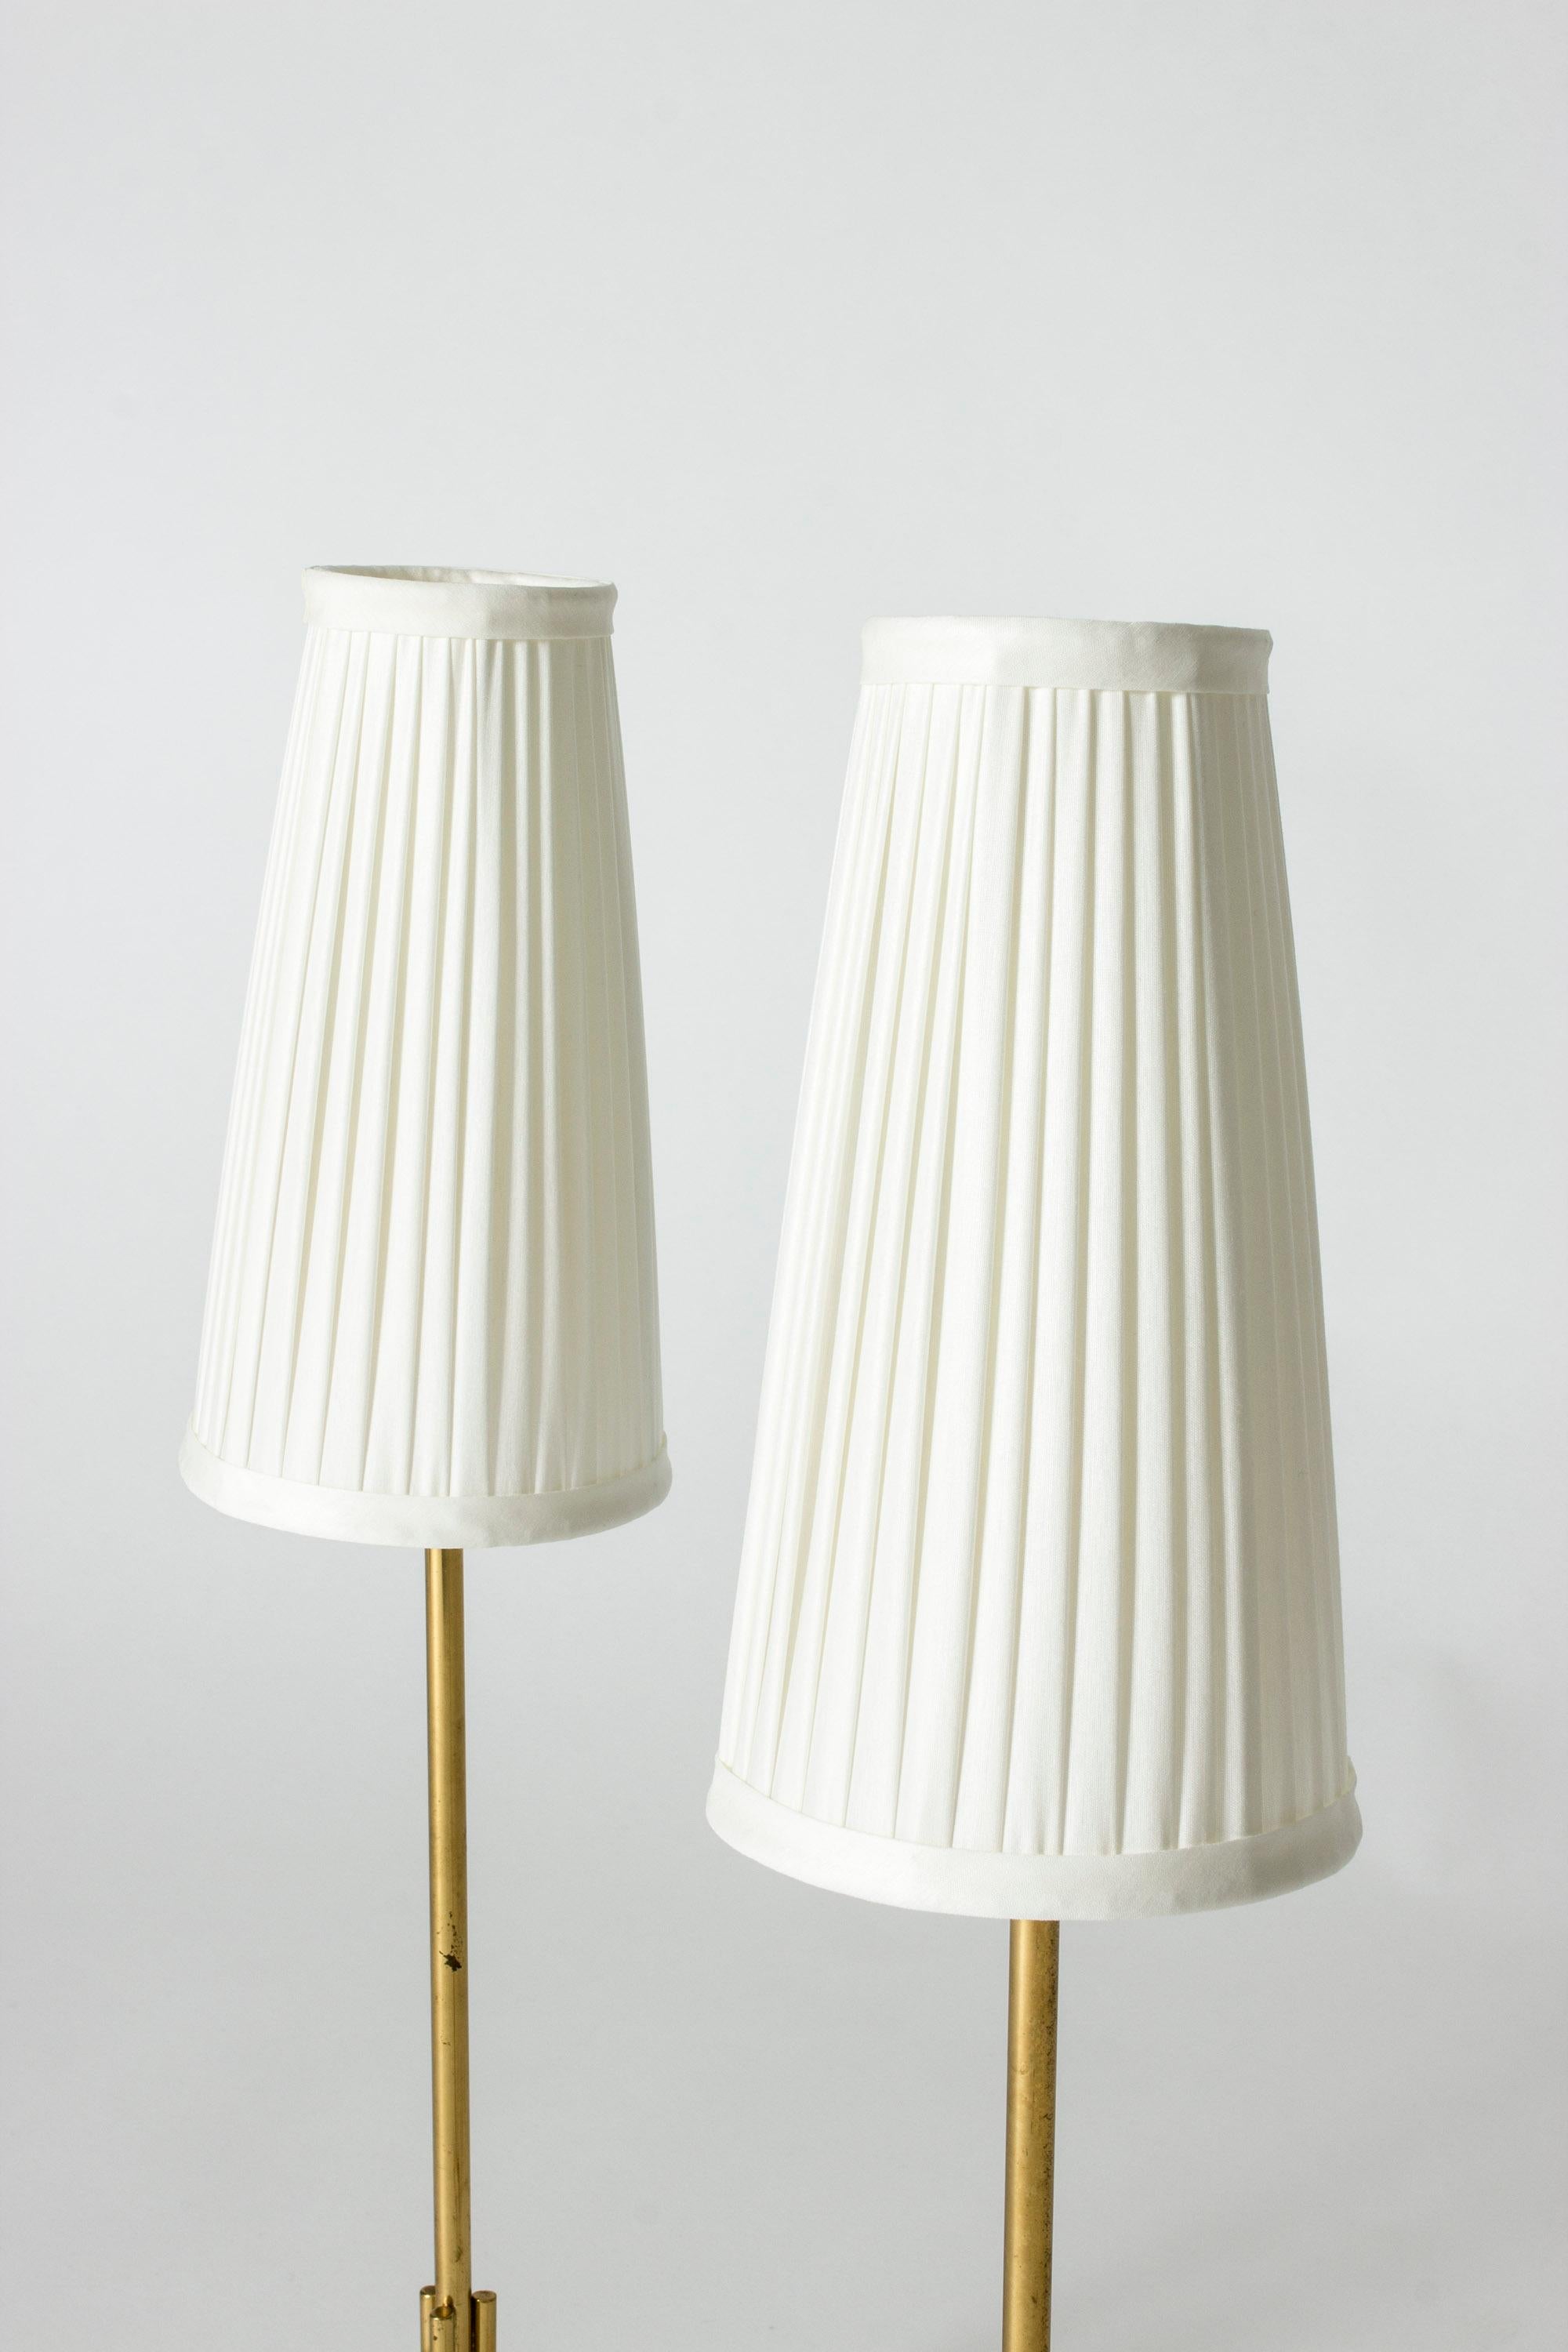 Scandinavian Modern Pair of Brass Table Lamps by Josef Frank, Svenskt Tenn, Sweden, 1950s